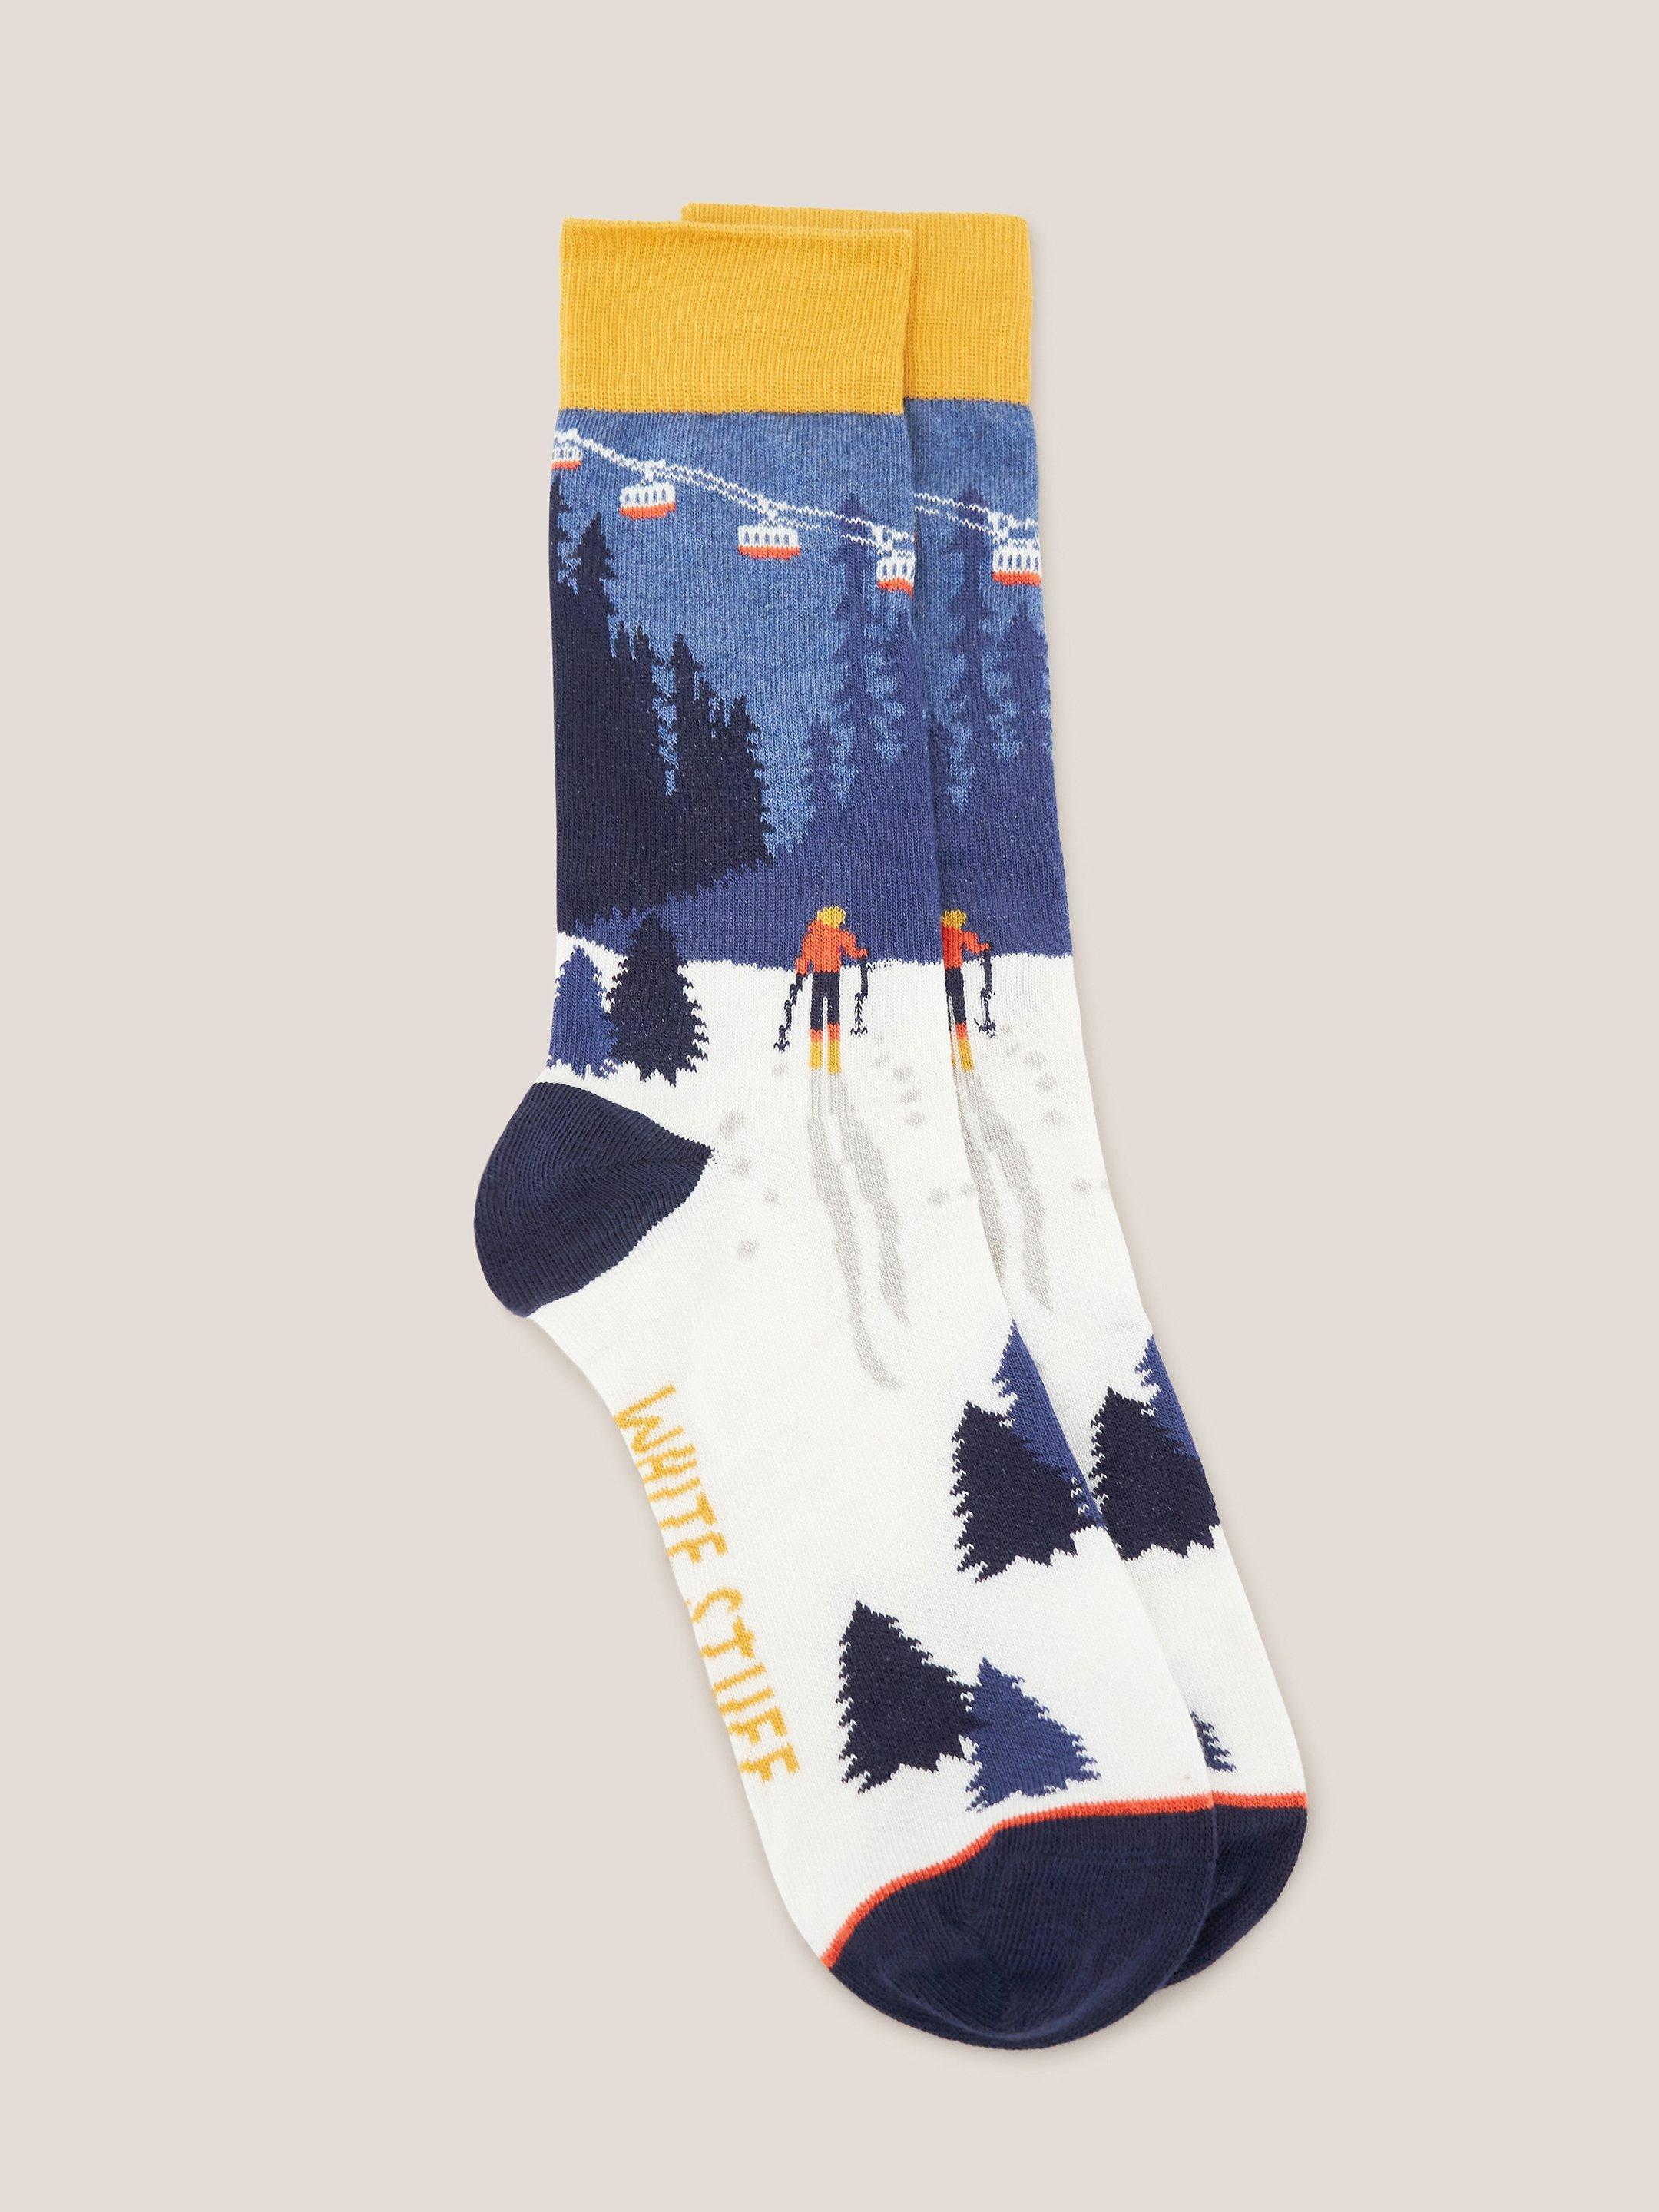 Ski Scenic Socks in a Cracker